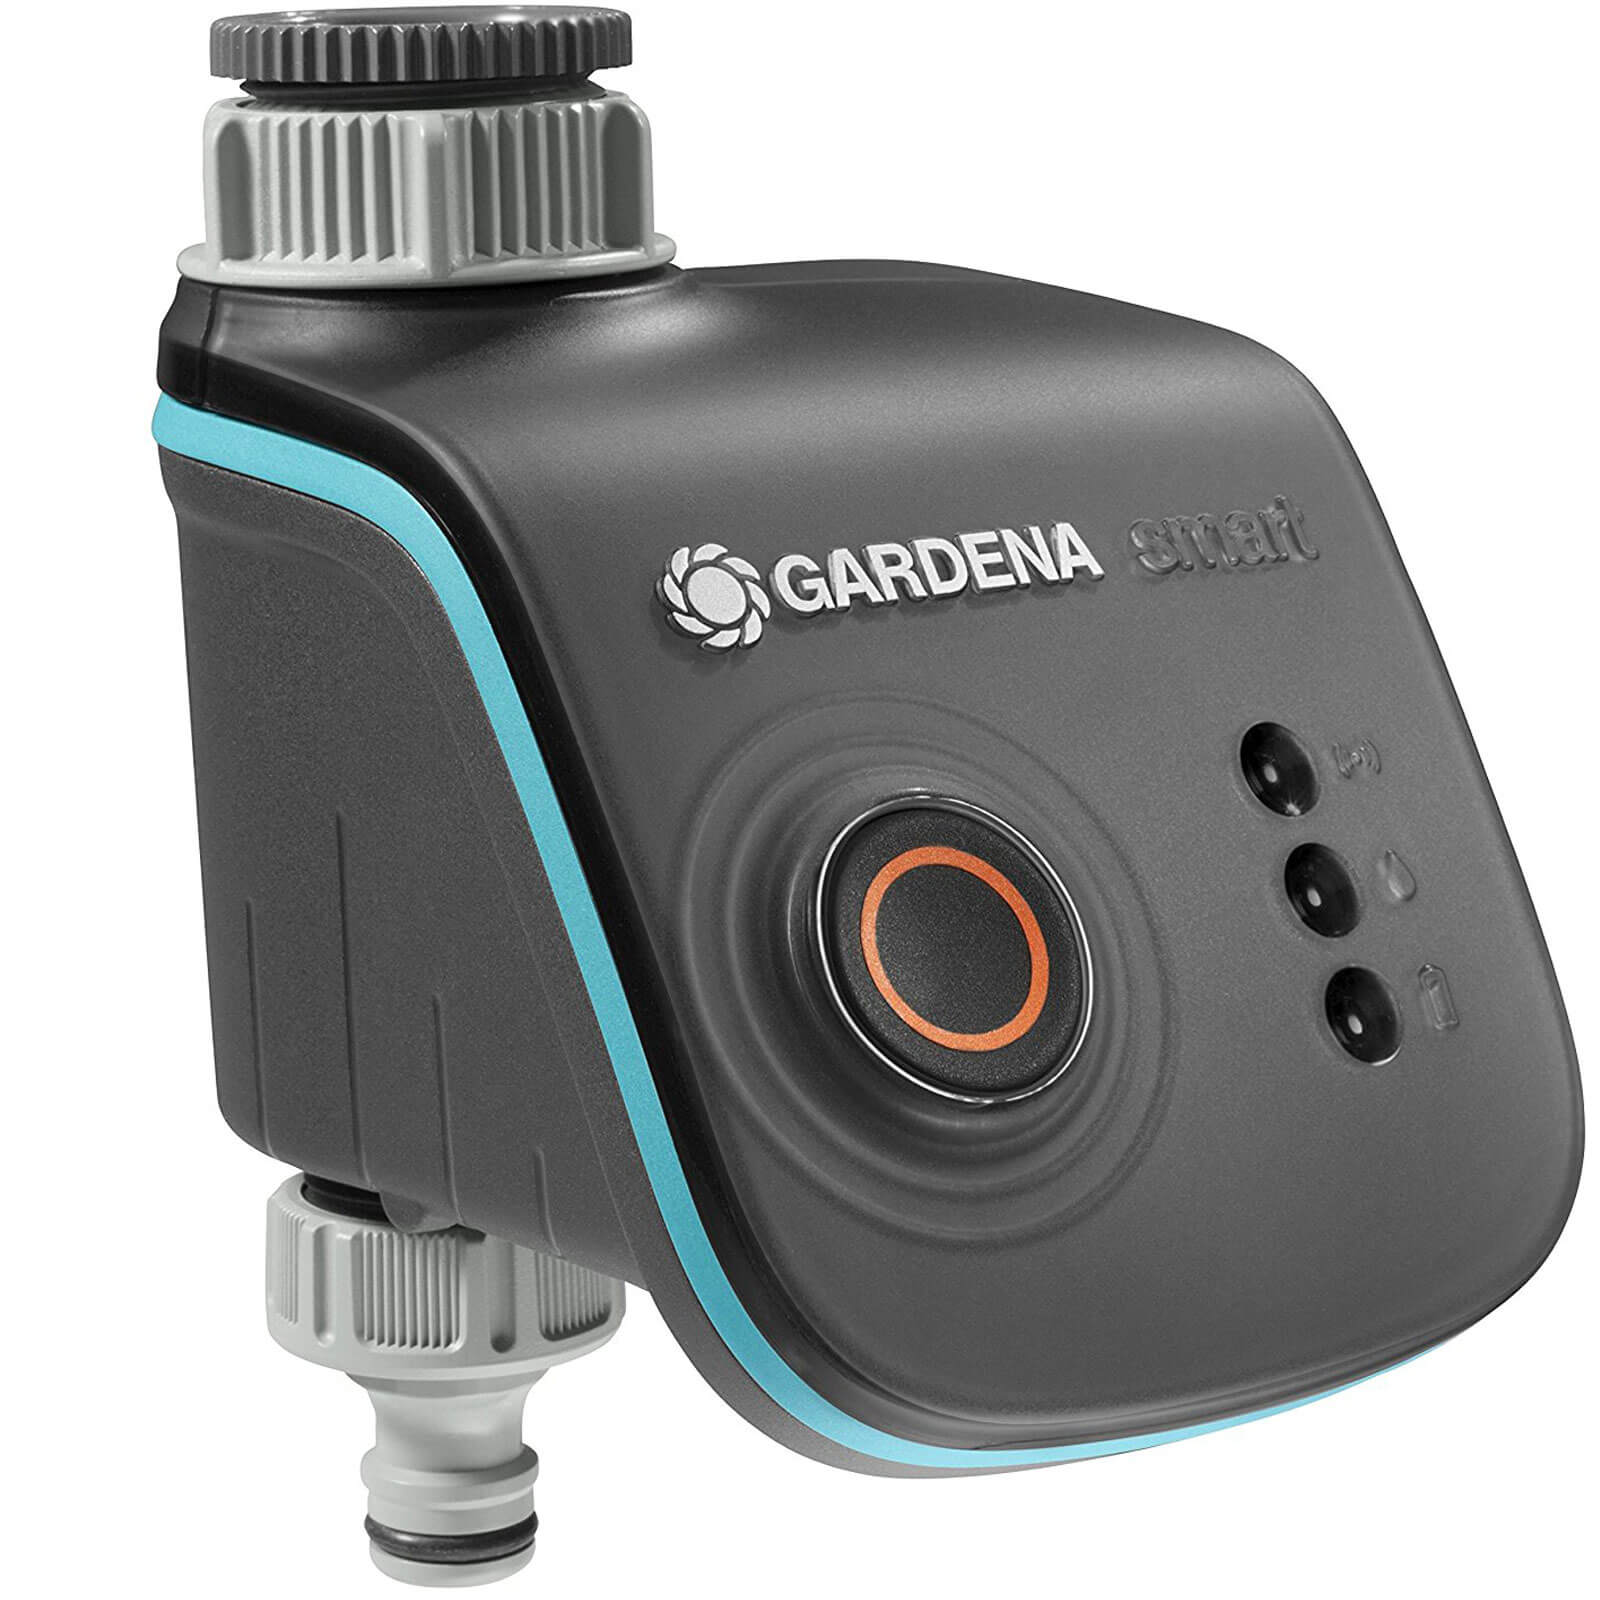 Gardena Smart Wirelesss Water Timer